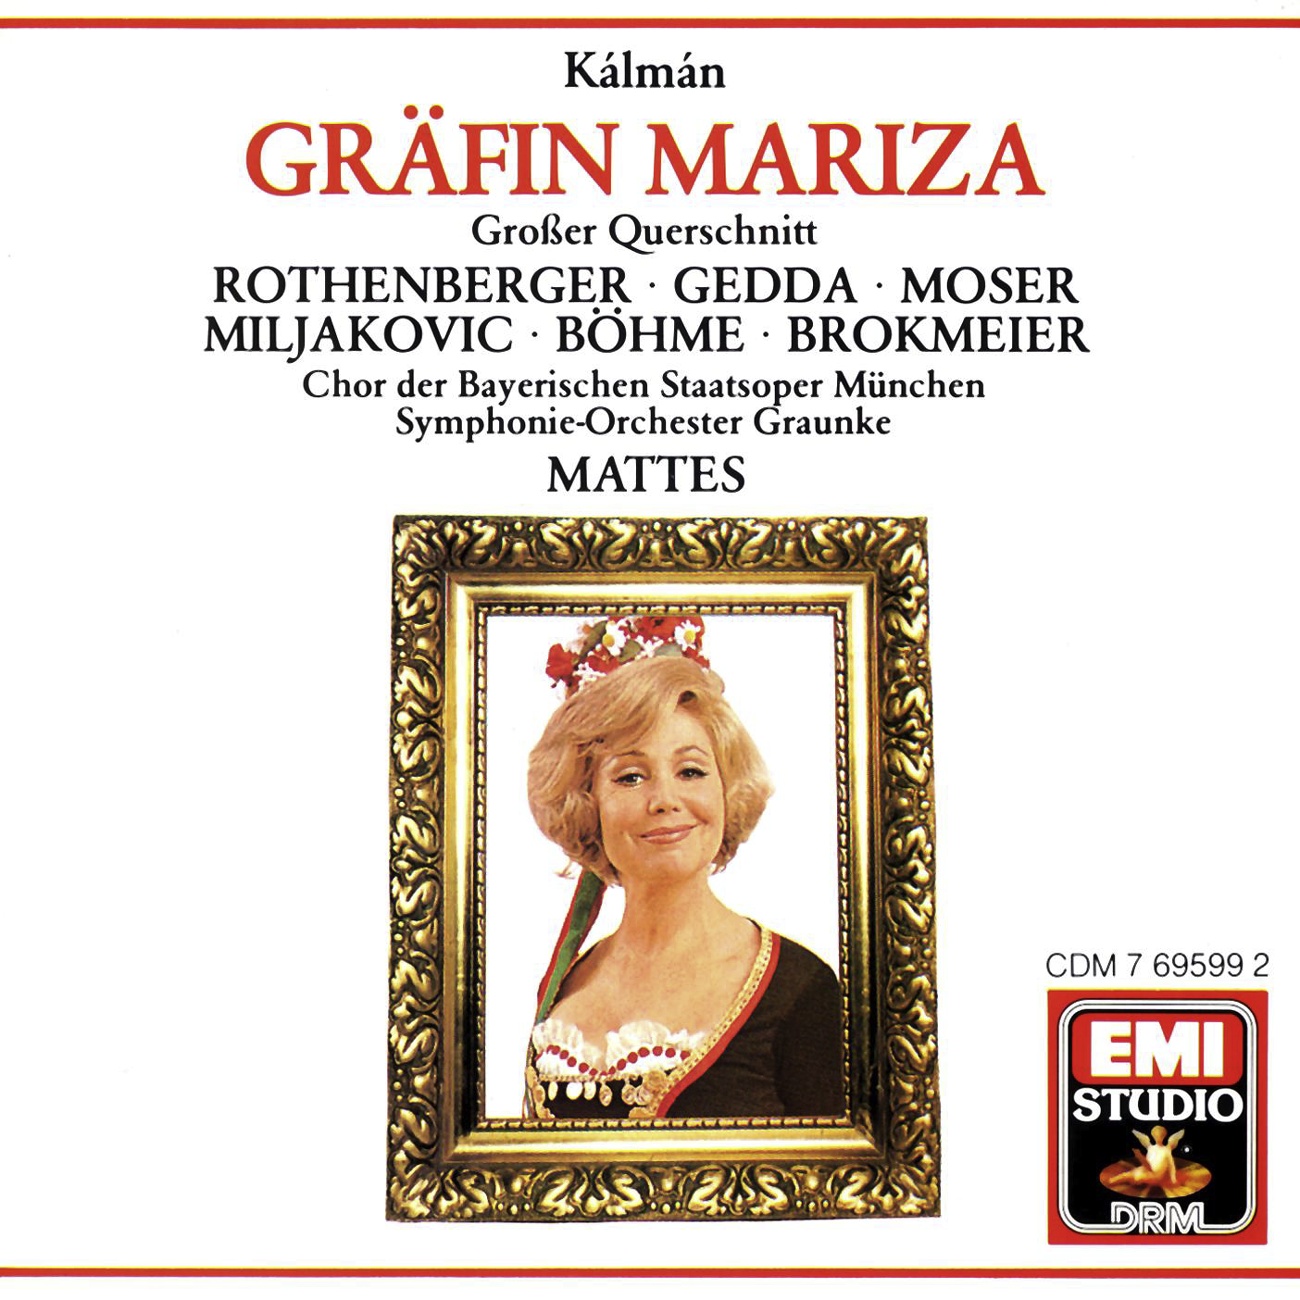 Gr fin Mariza  Highlights 1988 Digital Remaster, Erster Akt: Introduktion Orchester  Glü ck ist ein sch ner Traum Manja